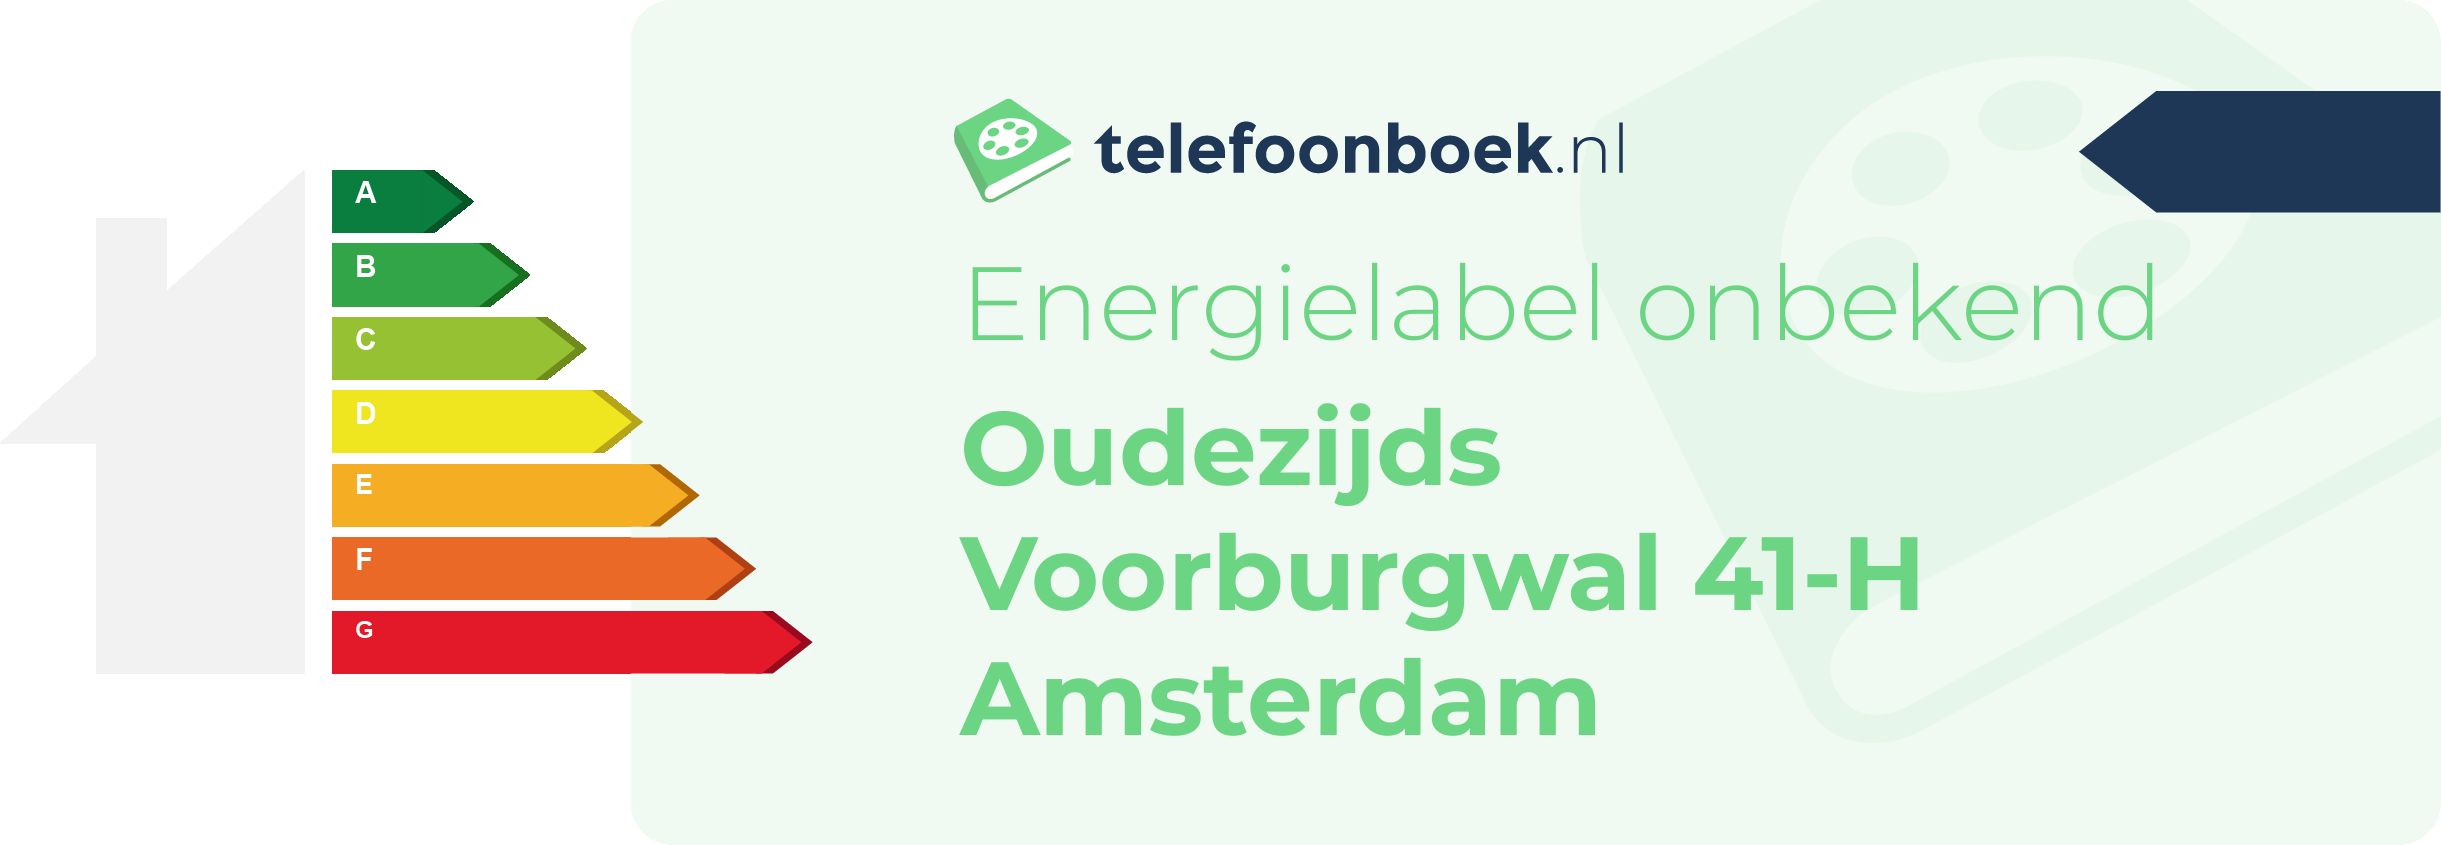 Energielabel Oudezijds Voorburgwal 41-H Amsterdam